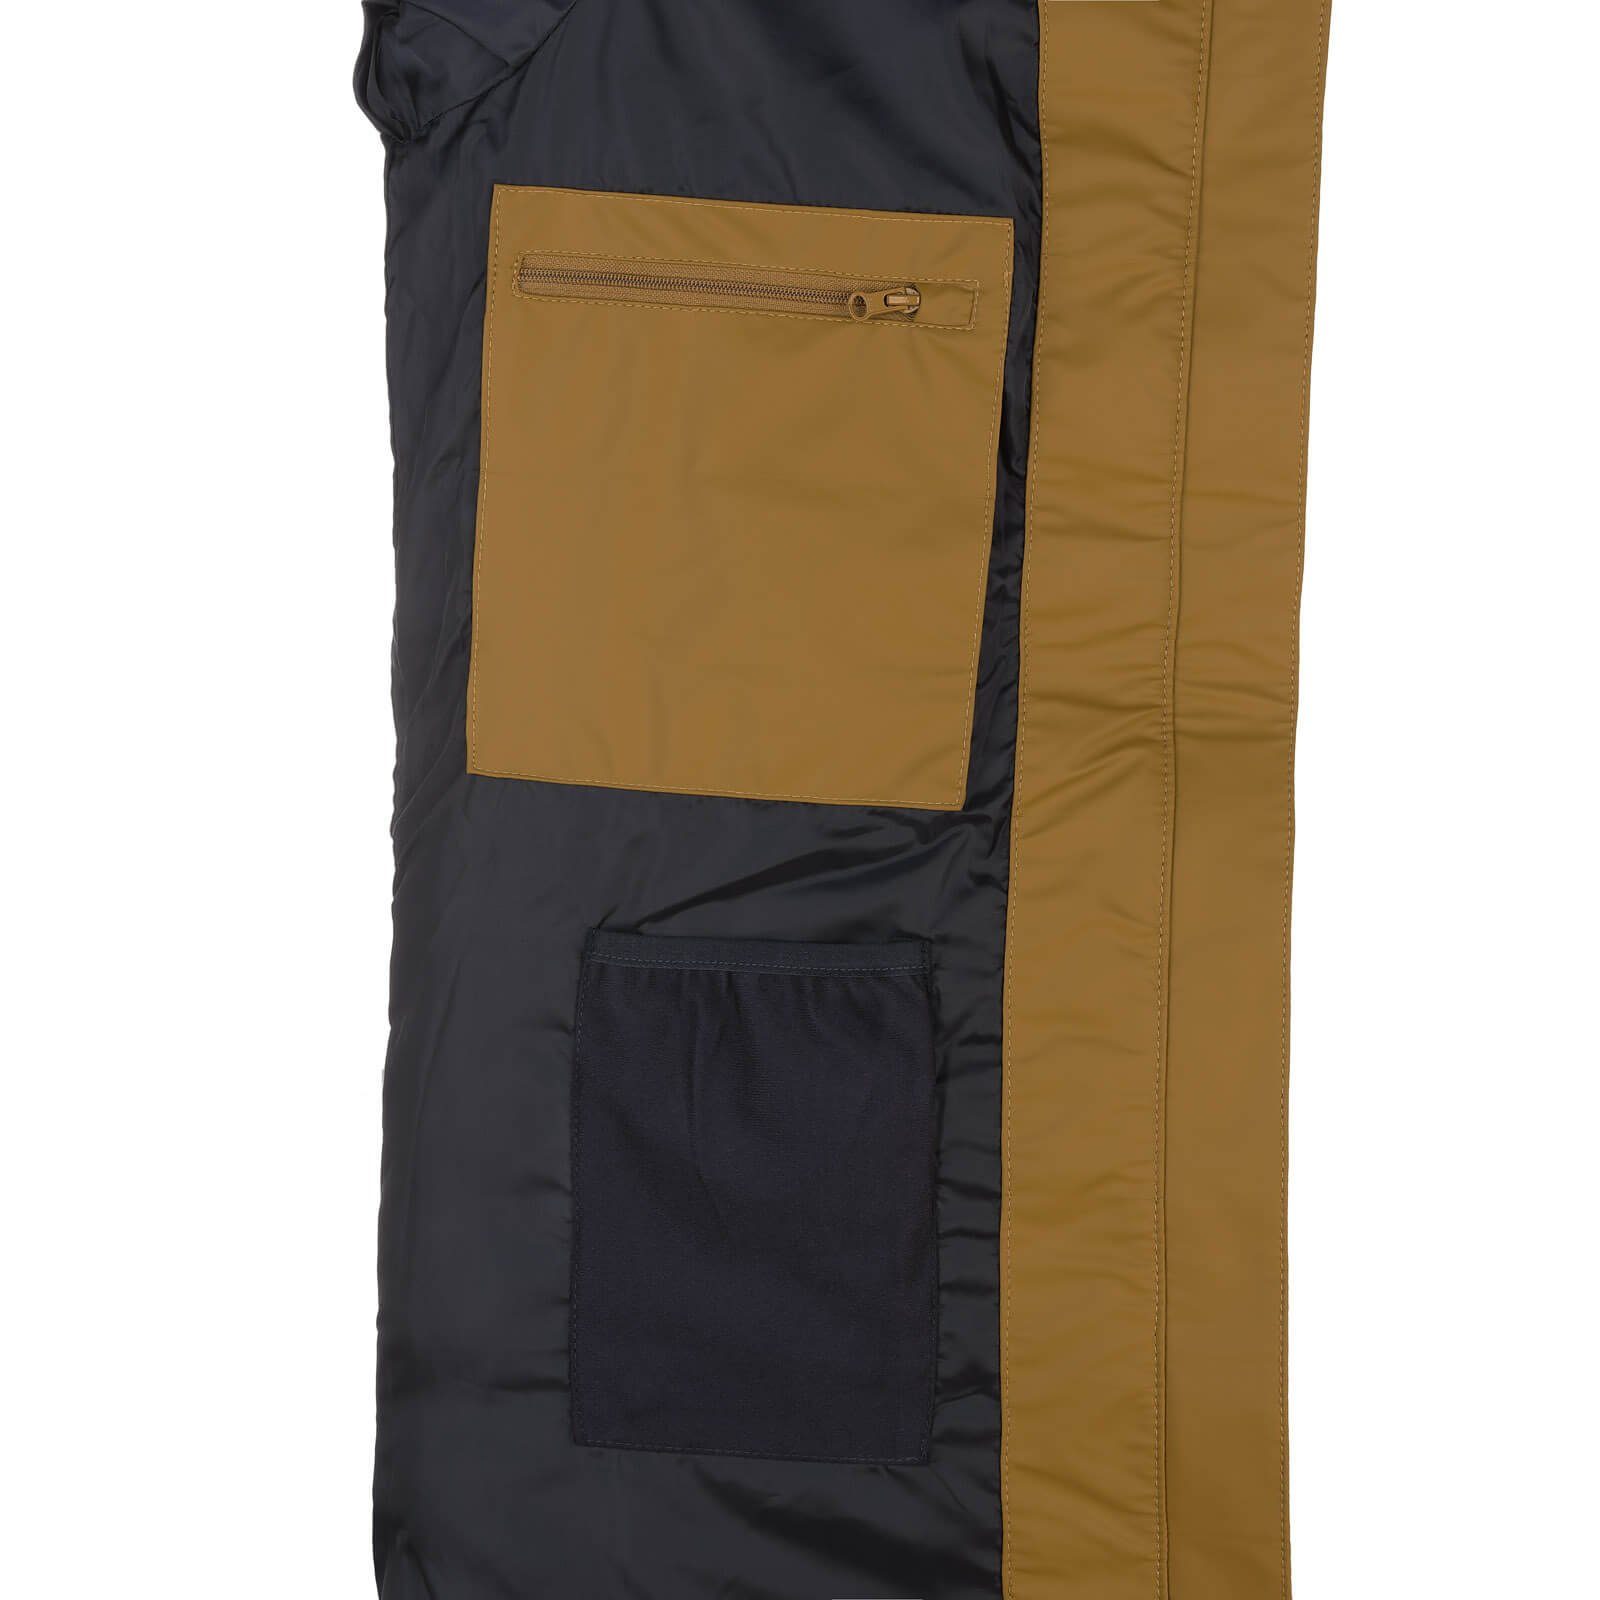 zimt gesteppt Outdoor-Jacke Damen Fashion Dry Regenmantel PU-Mantel wasserdicht Danzig wind- - und